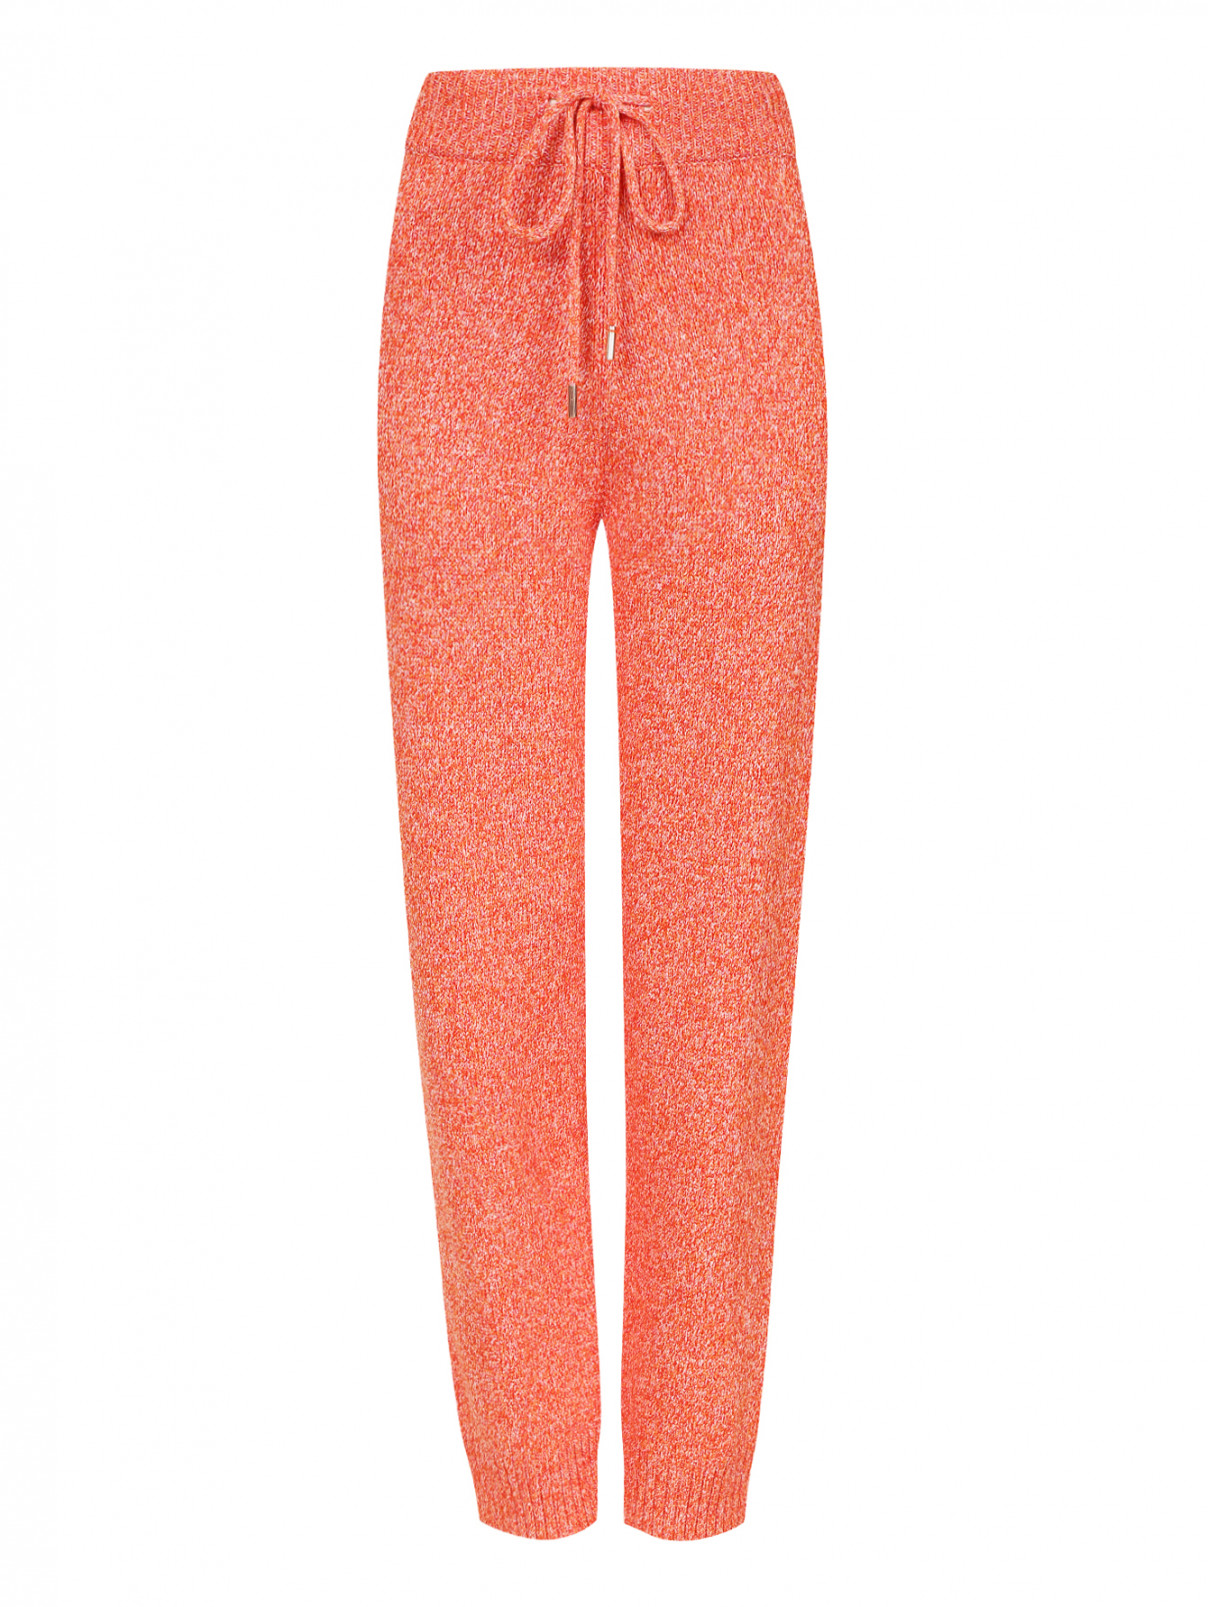 Трикотажные брюки на резинке Edition10  –  Общий вид  – Цвет:  Оранжевый